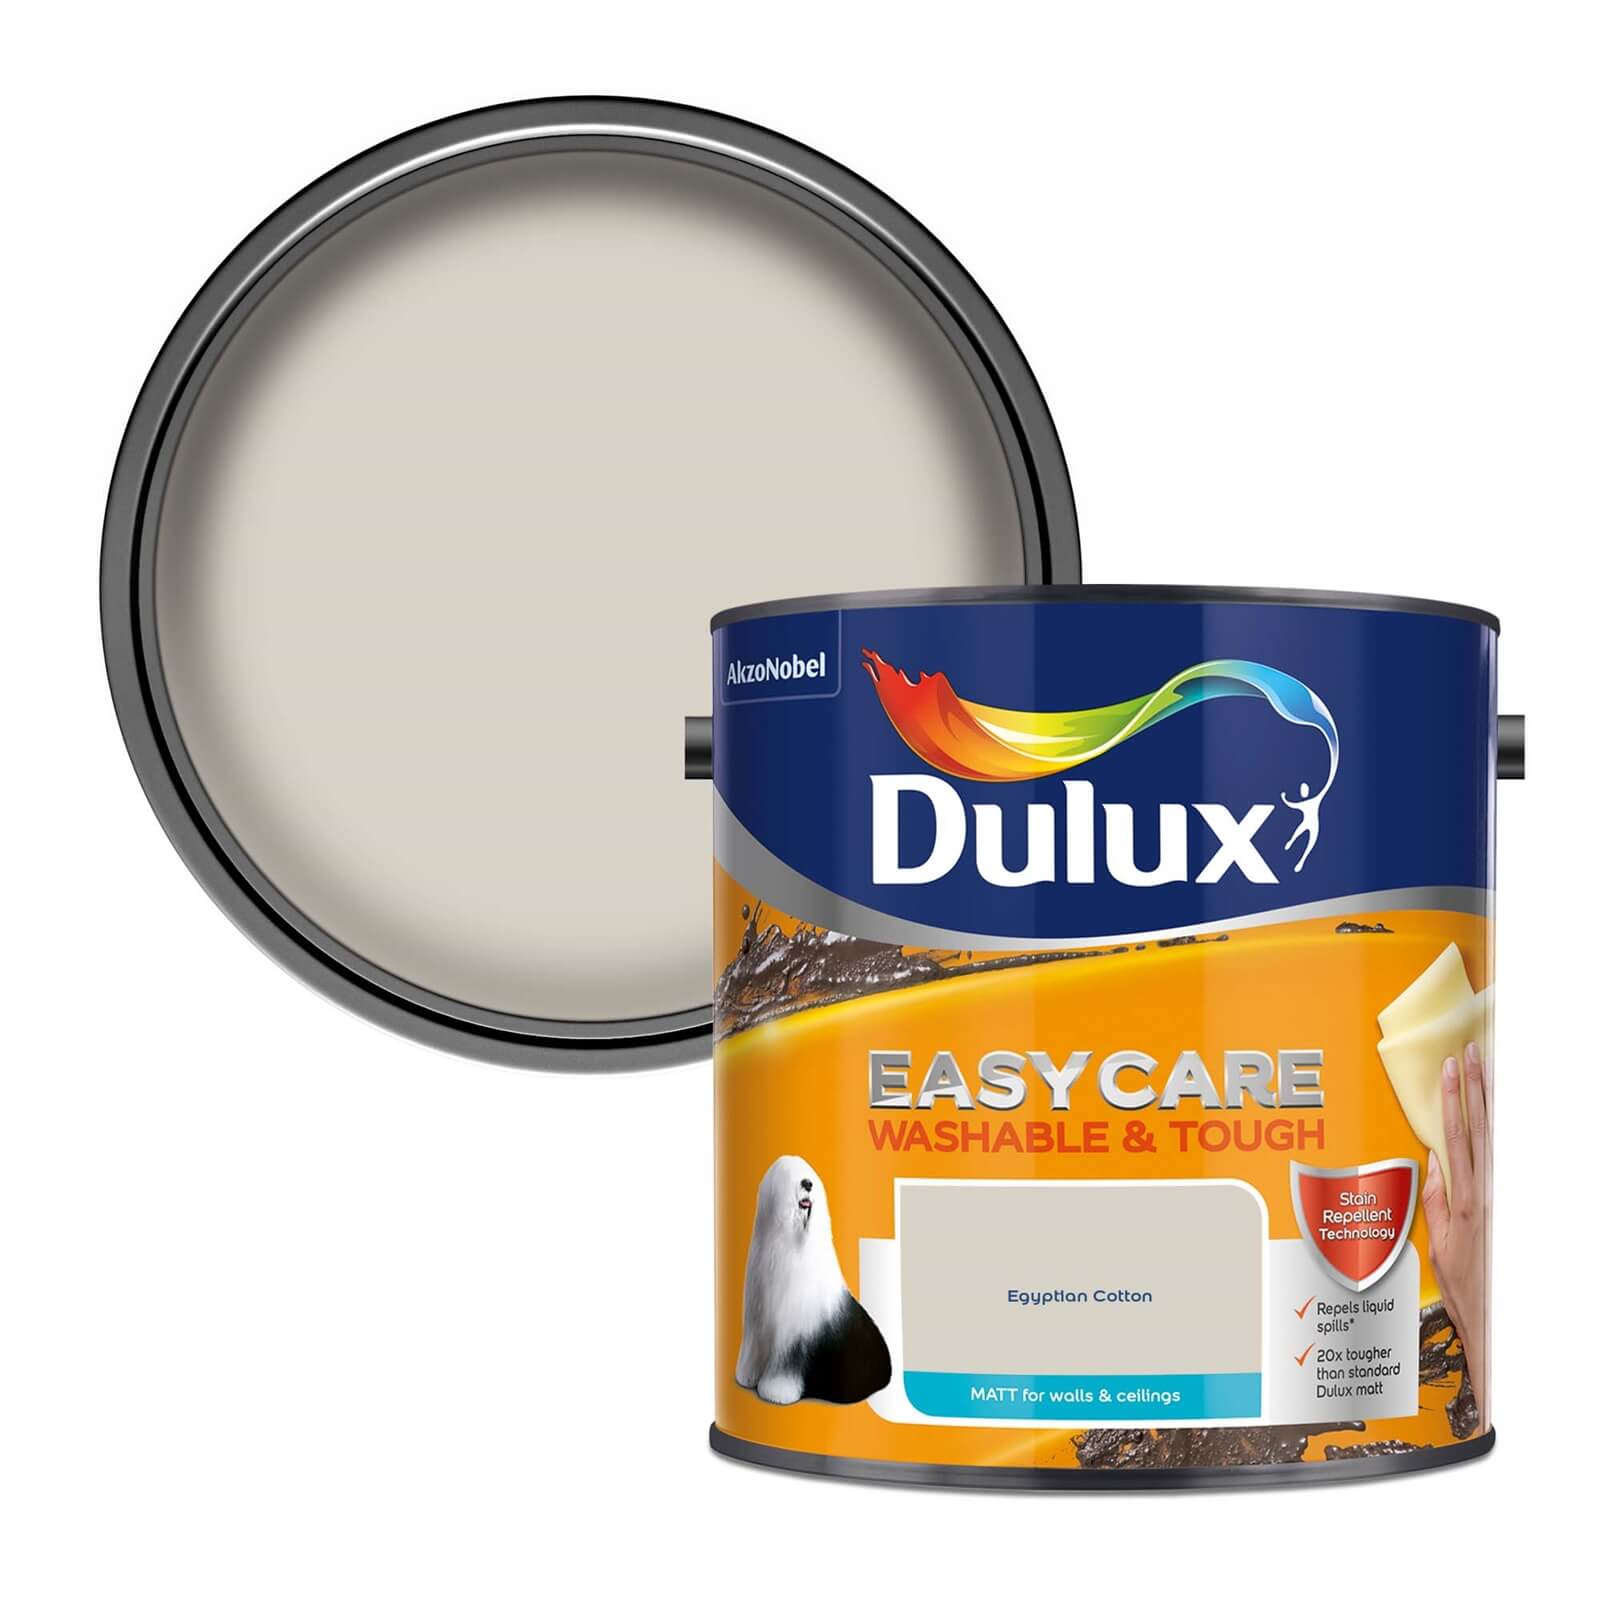 Dulux Easycare Washable & Tough Matt Paint Egyptian Cotton - 2.5L